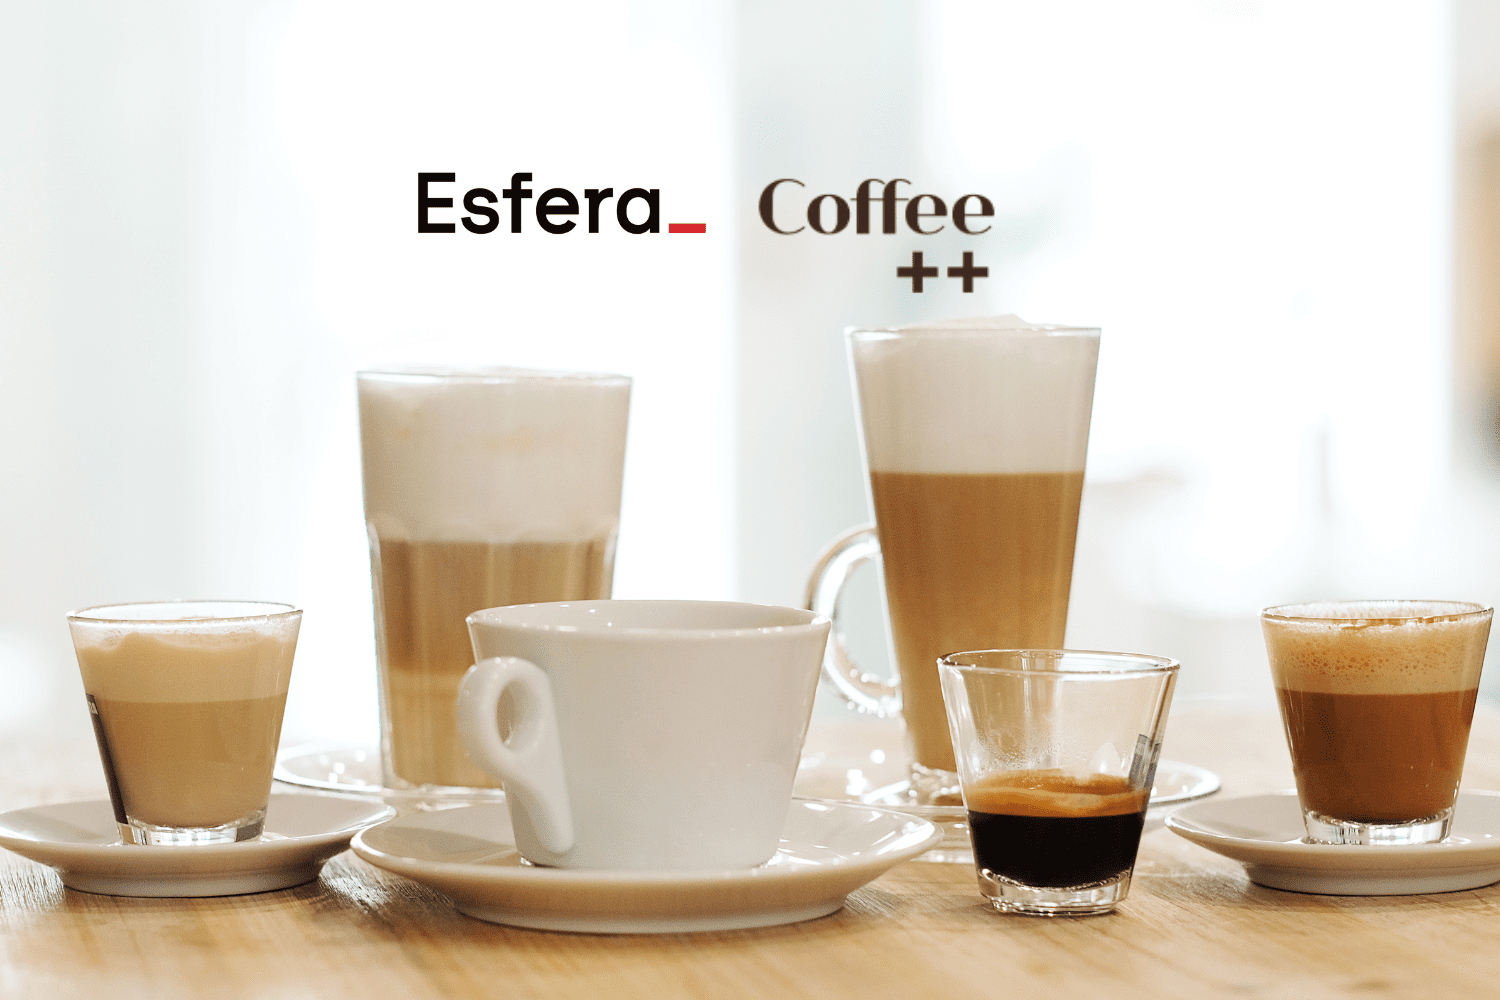 Vários tipos de café em copos e xícaras sobre uma mesa, com os logotipos da Esfera e Coffee++ no topo da imagem.